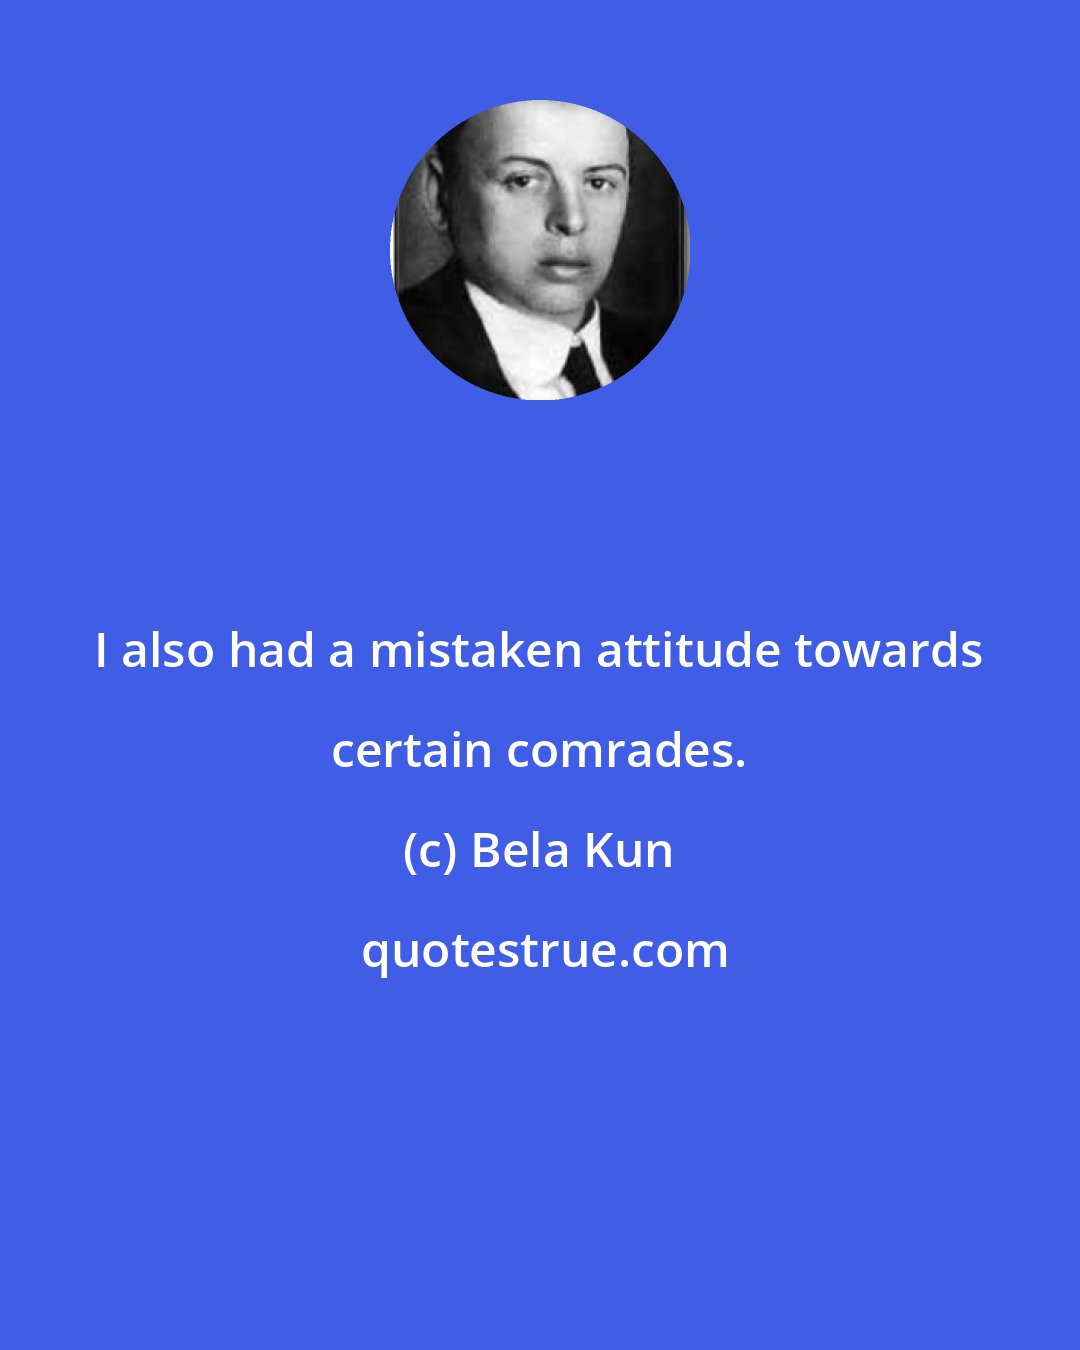 Bela Kun: I also had a mistaken attitude towards certain comrades.